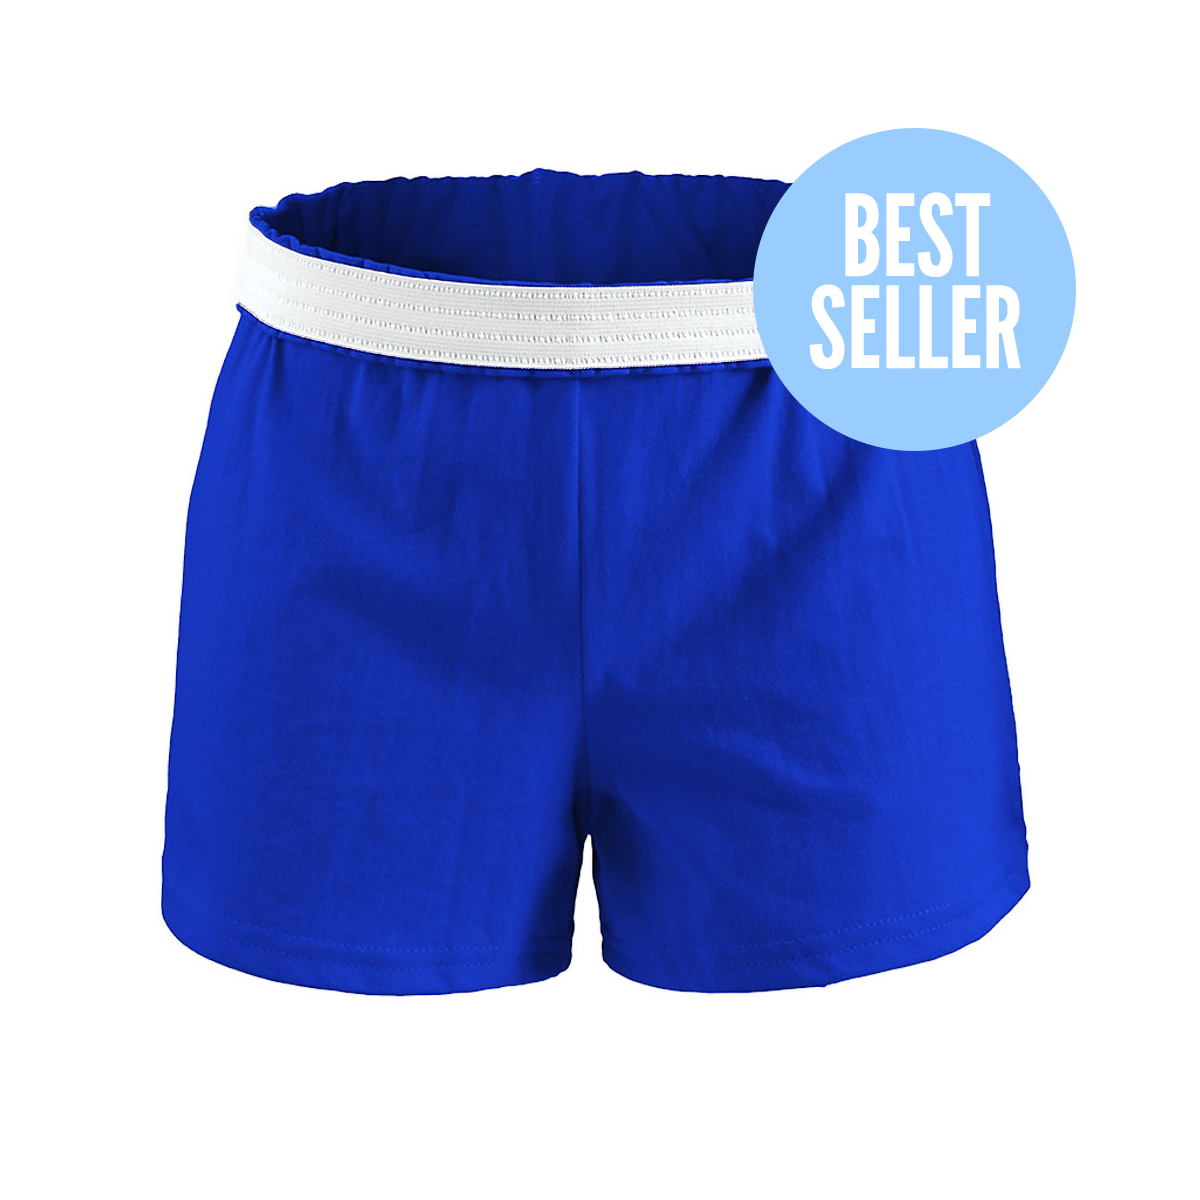 Blue cheer shorts